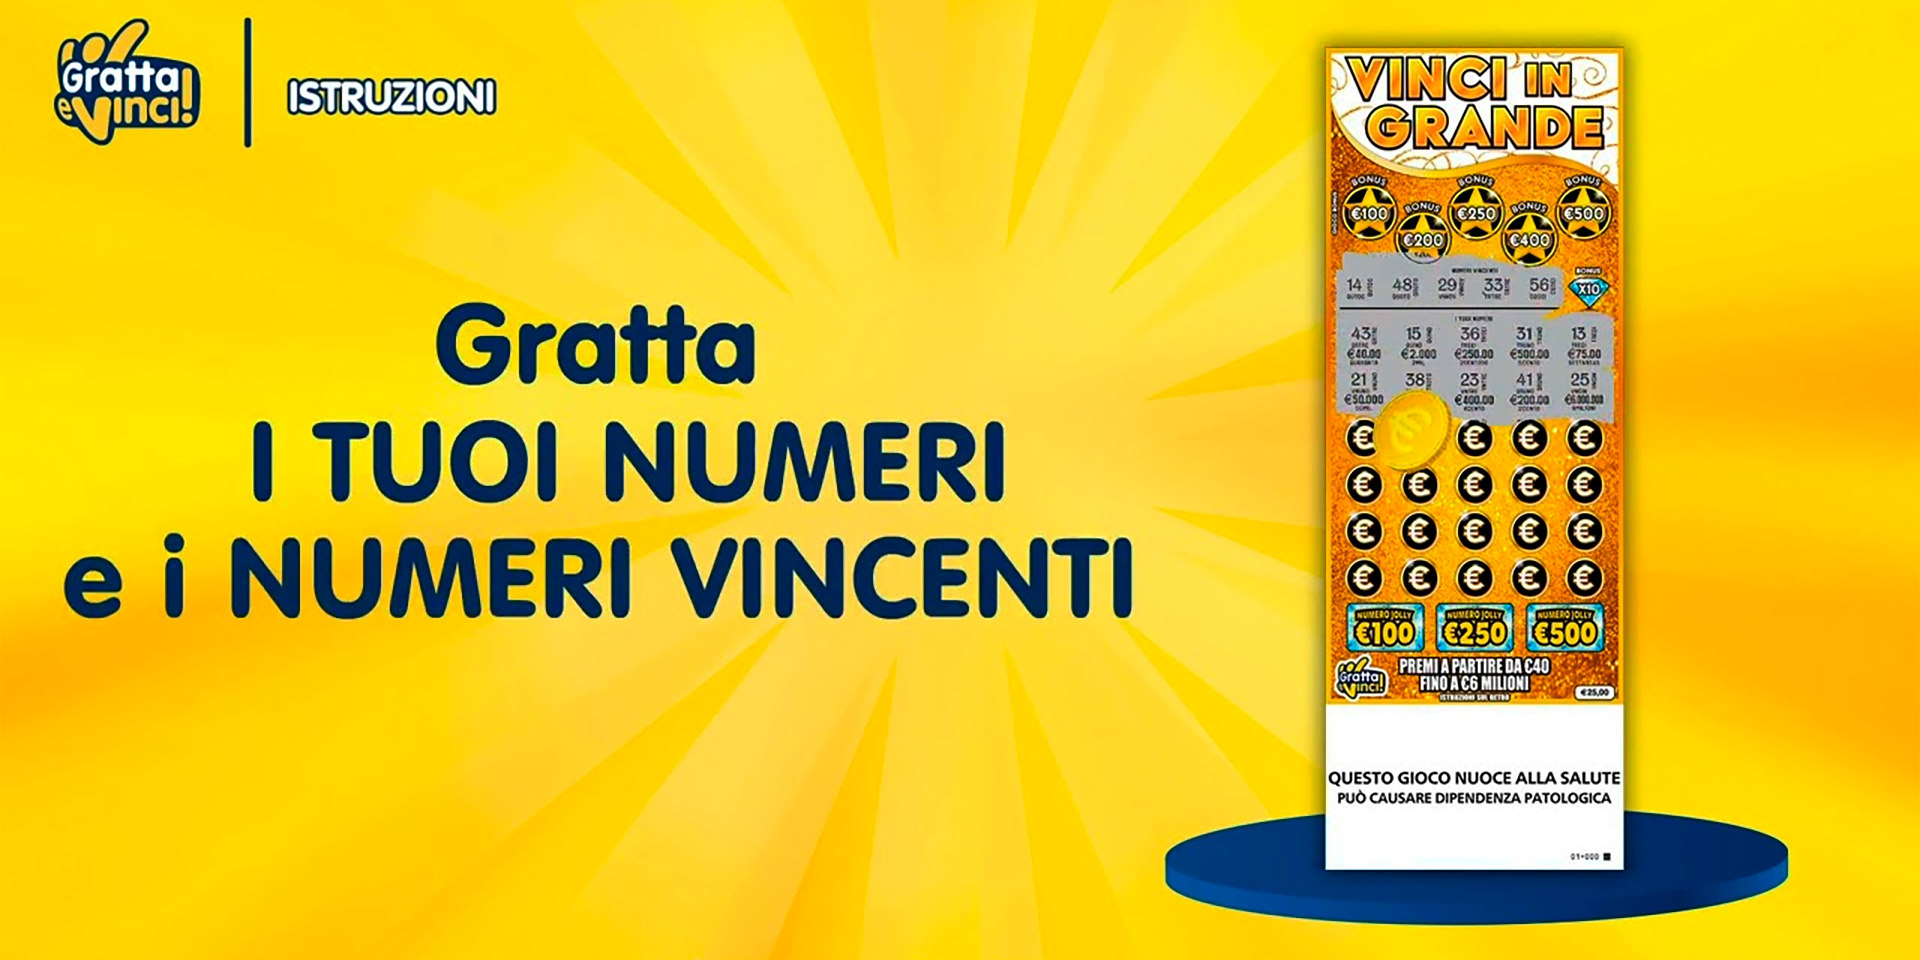 Vinci in Grande: Il Primo Gratta e Vinci Virtuale Italiano con un Valore Nominale di 25 Euro